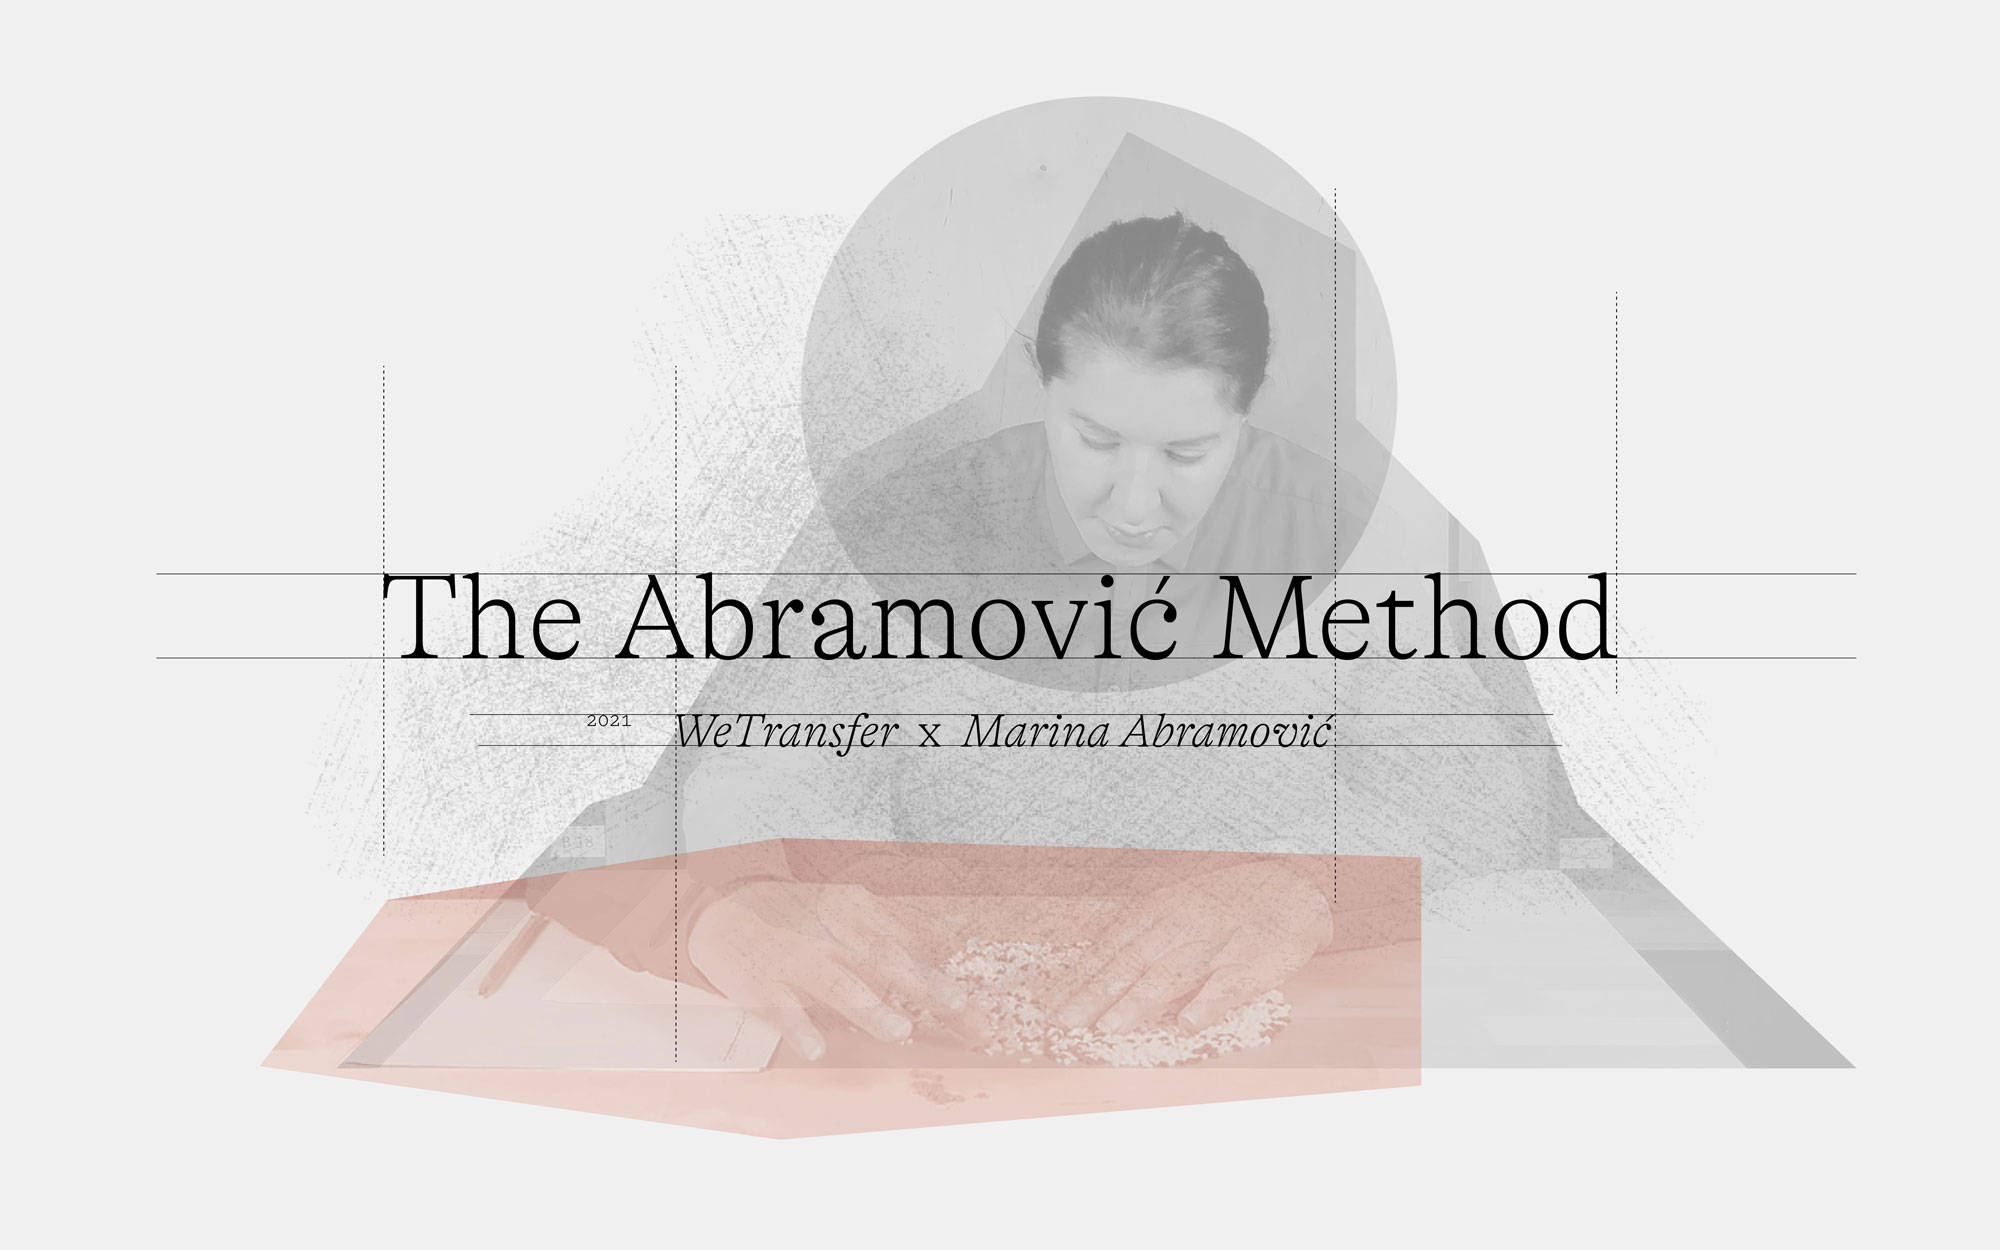 Marina Abramović x WeTransfer: The Abramović Method. Copyright © Marina Abramović, 2021